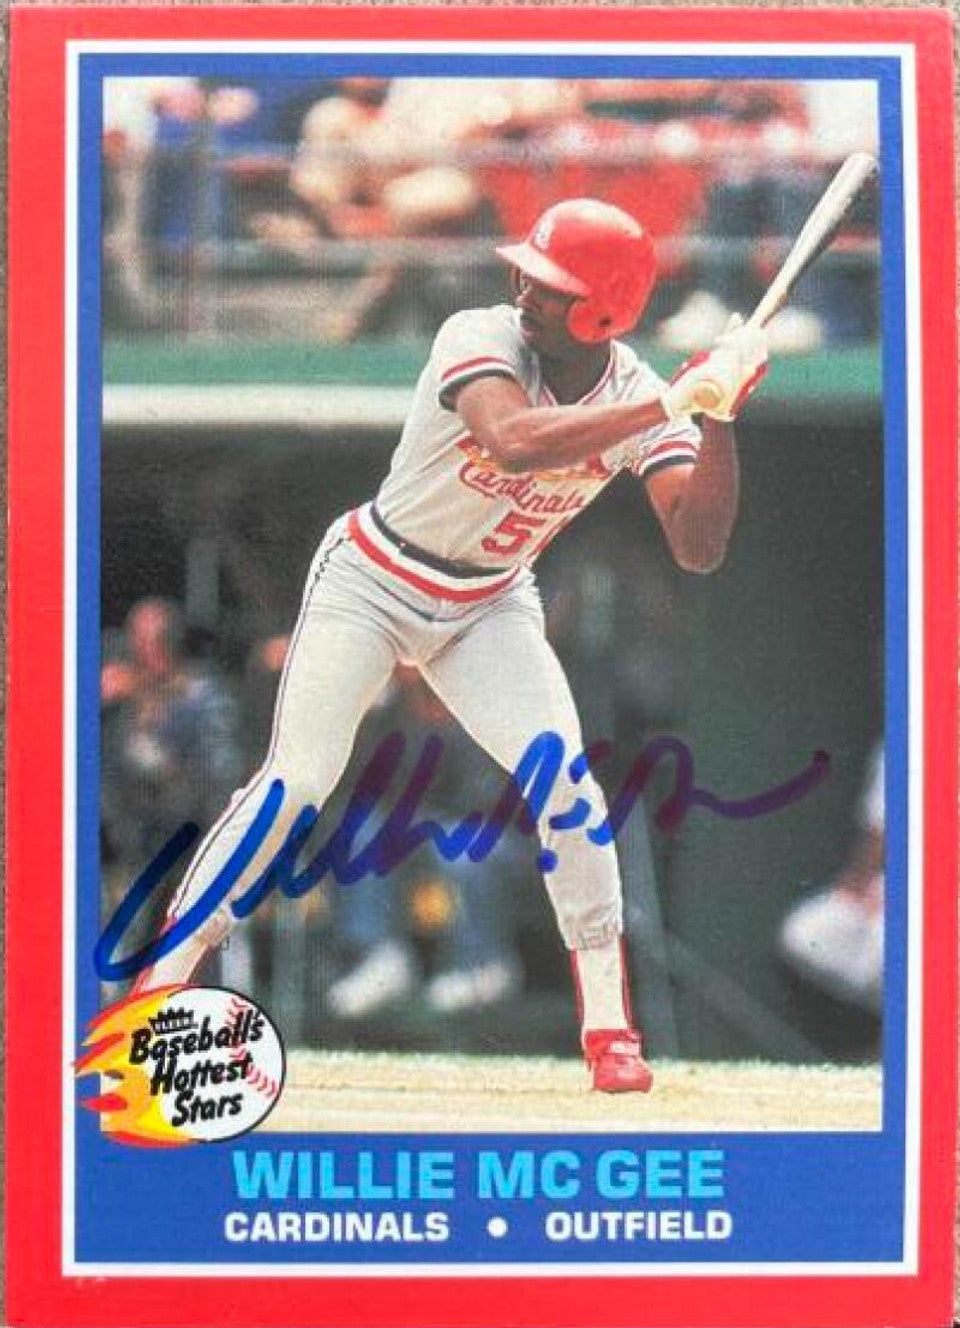 ウィリー・マギー直筆サイン入り 1986 Fleer Hottest Stars 野球カード - セントルイス・カーディナルス